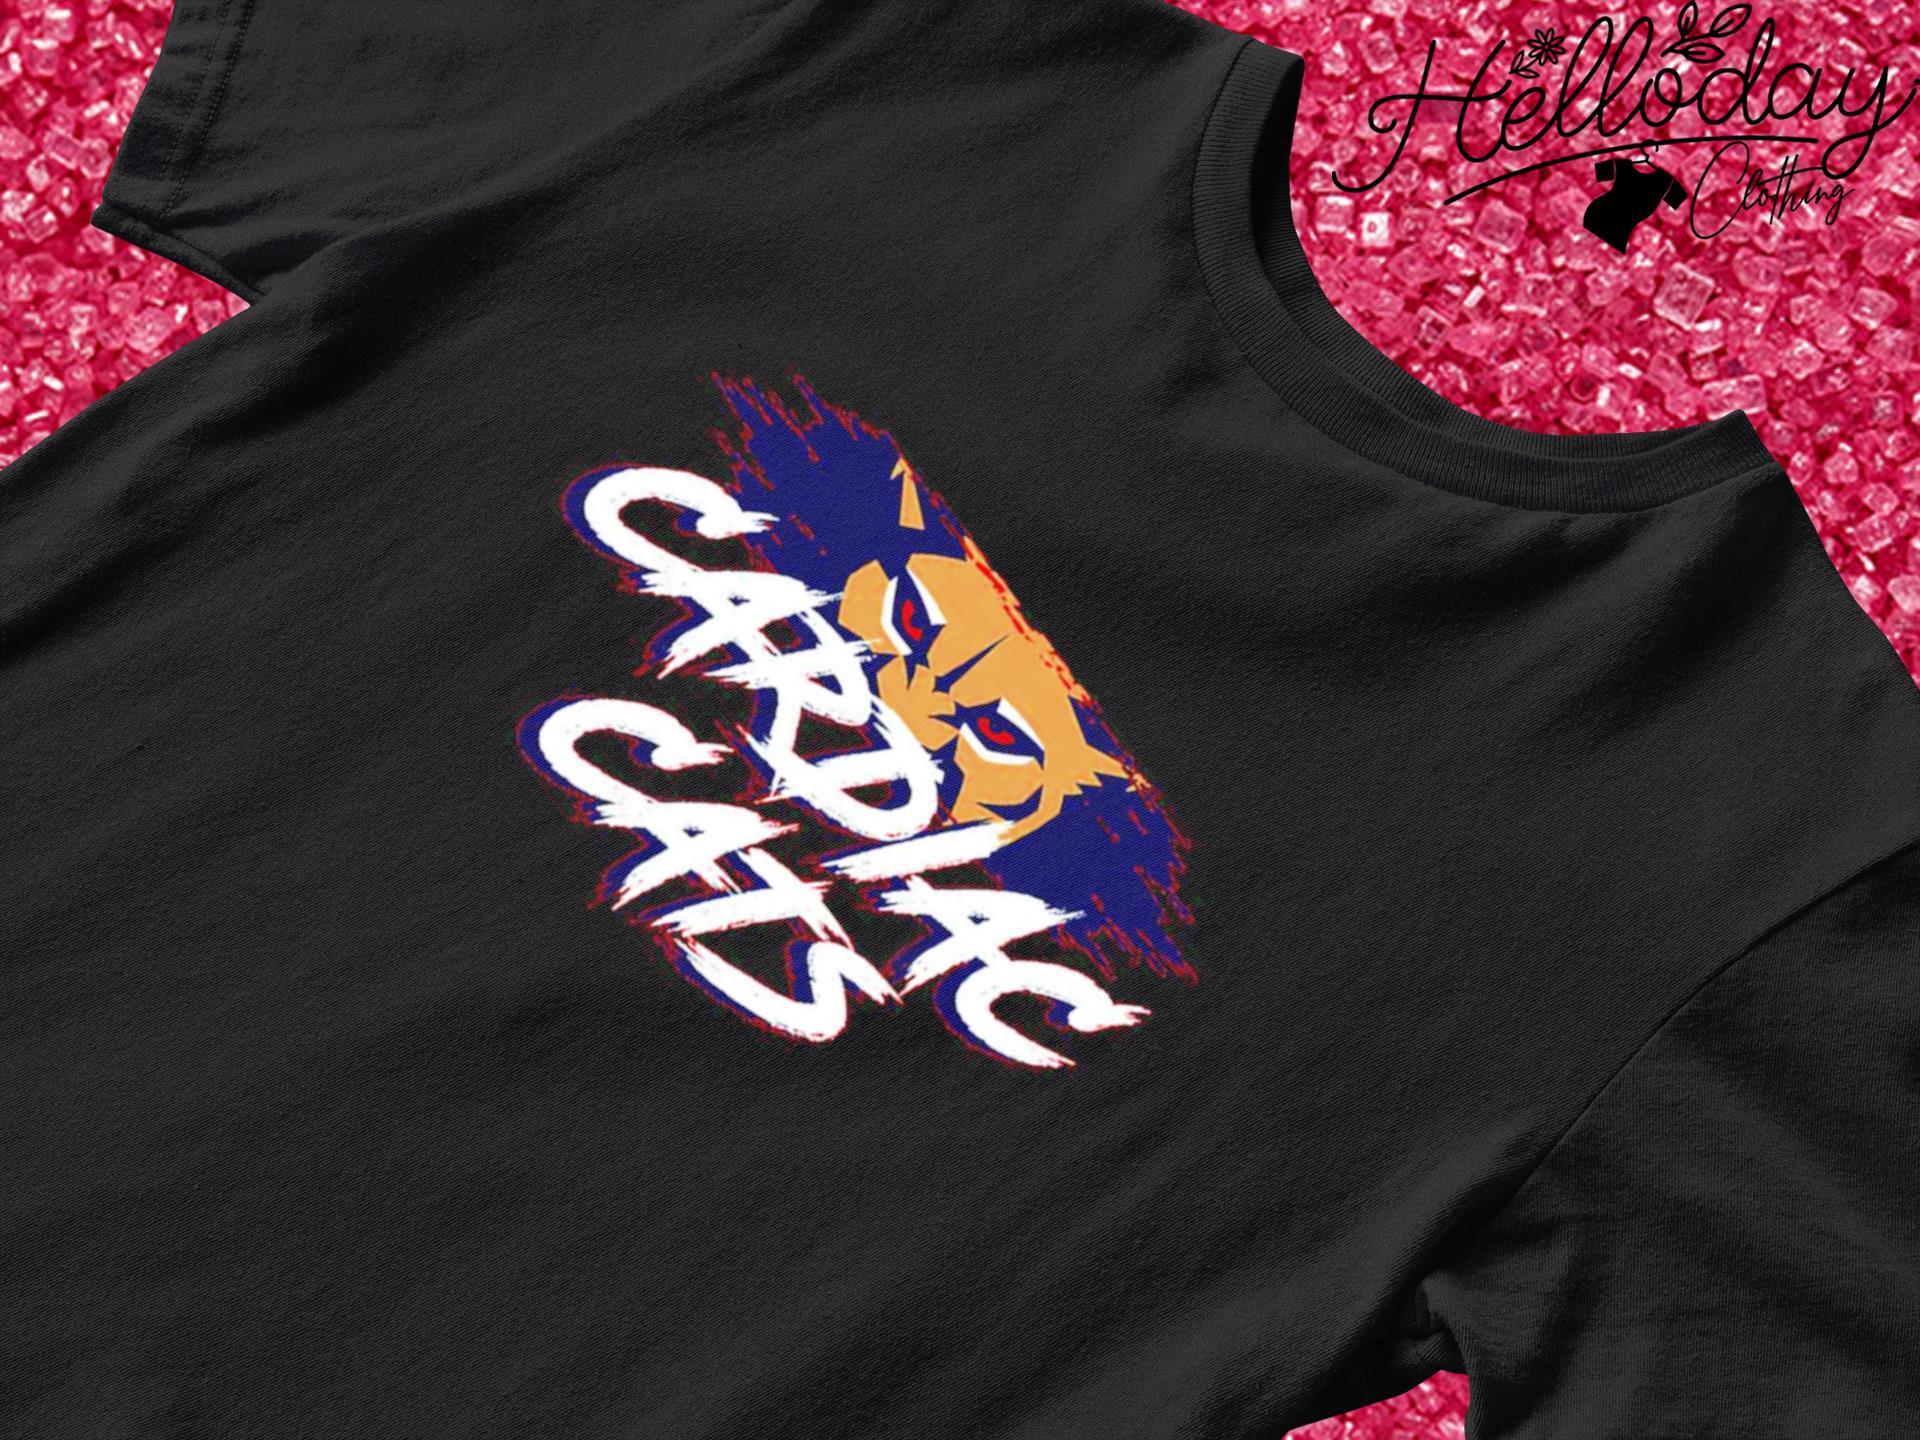 Florida Panthers Cardiac Cats shirt